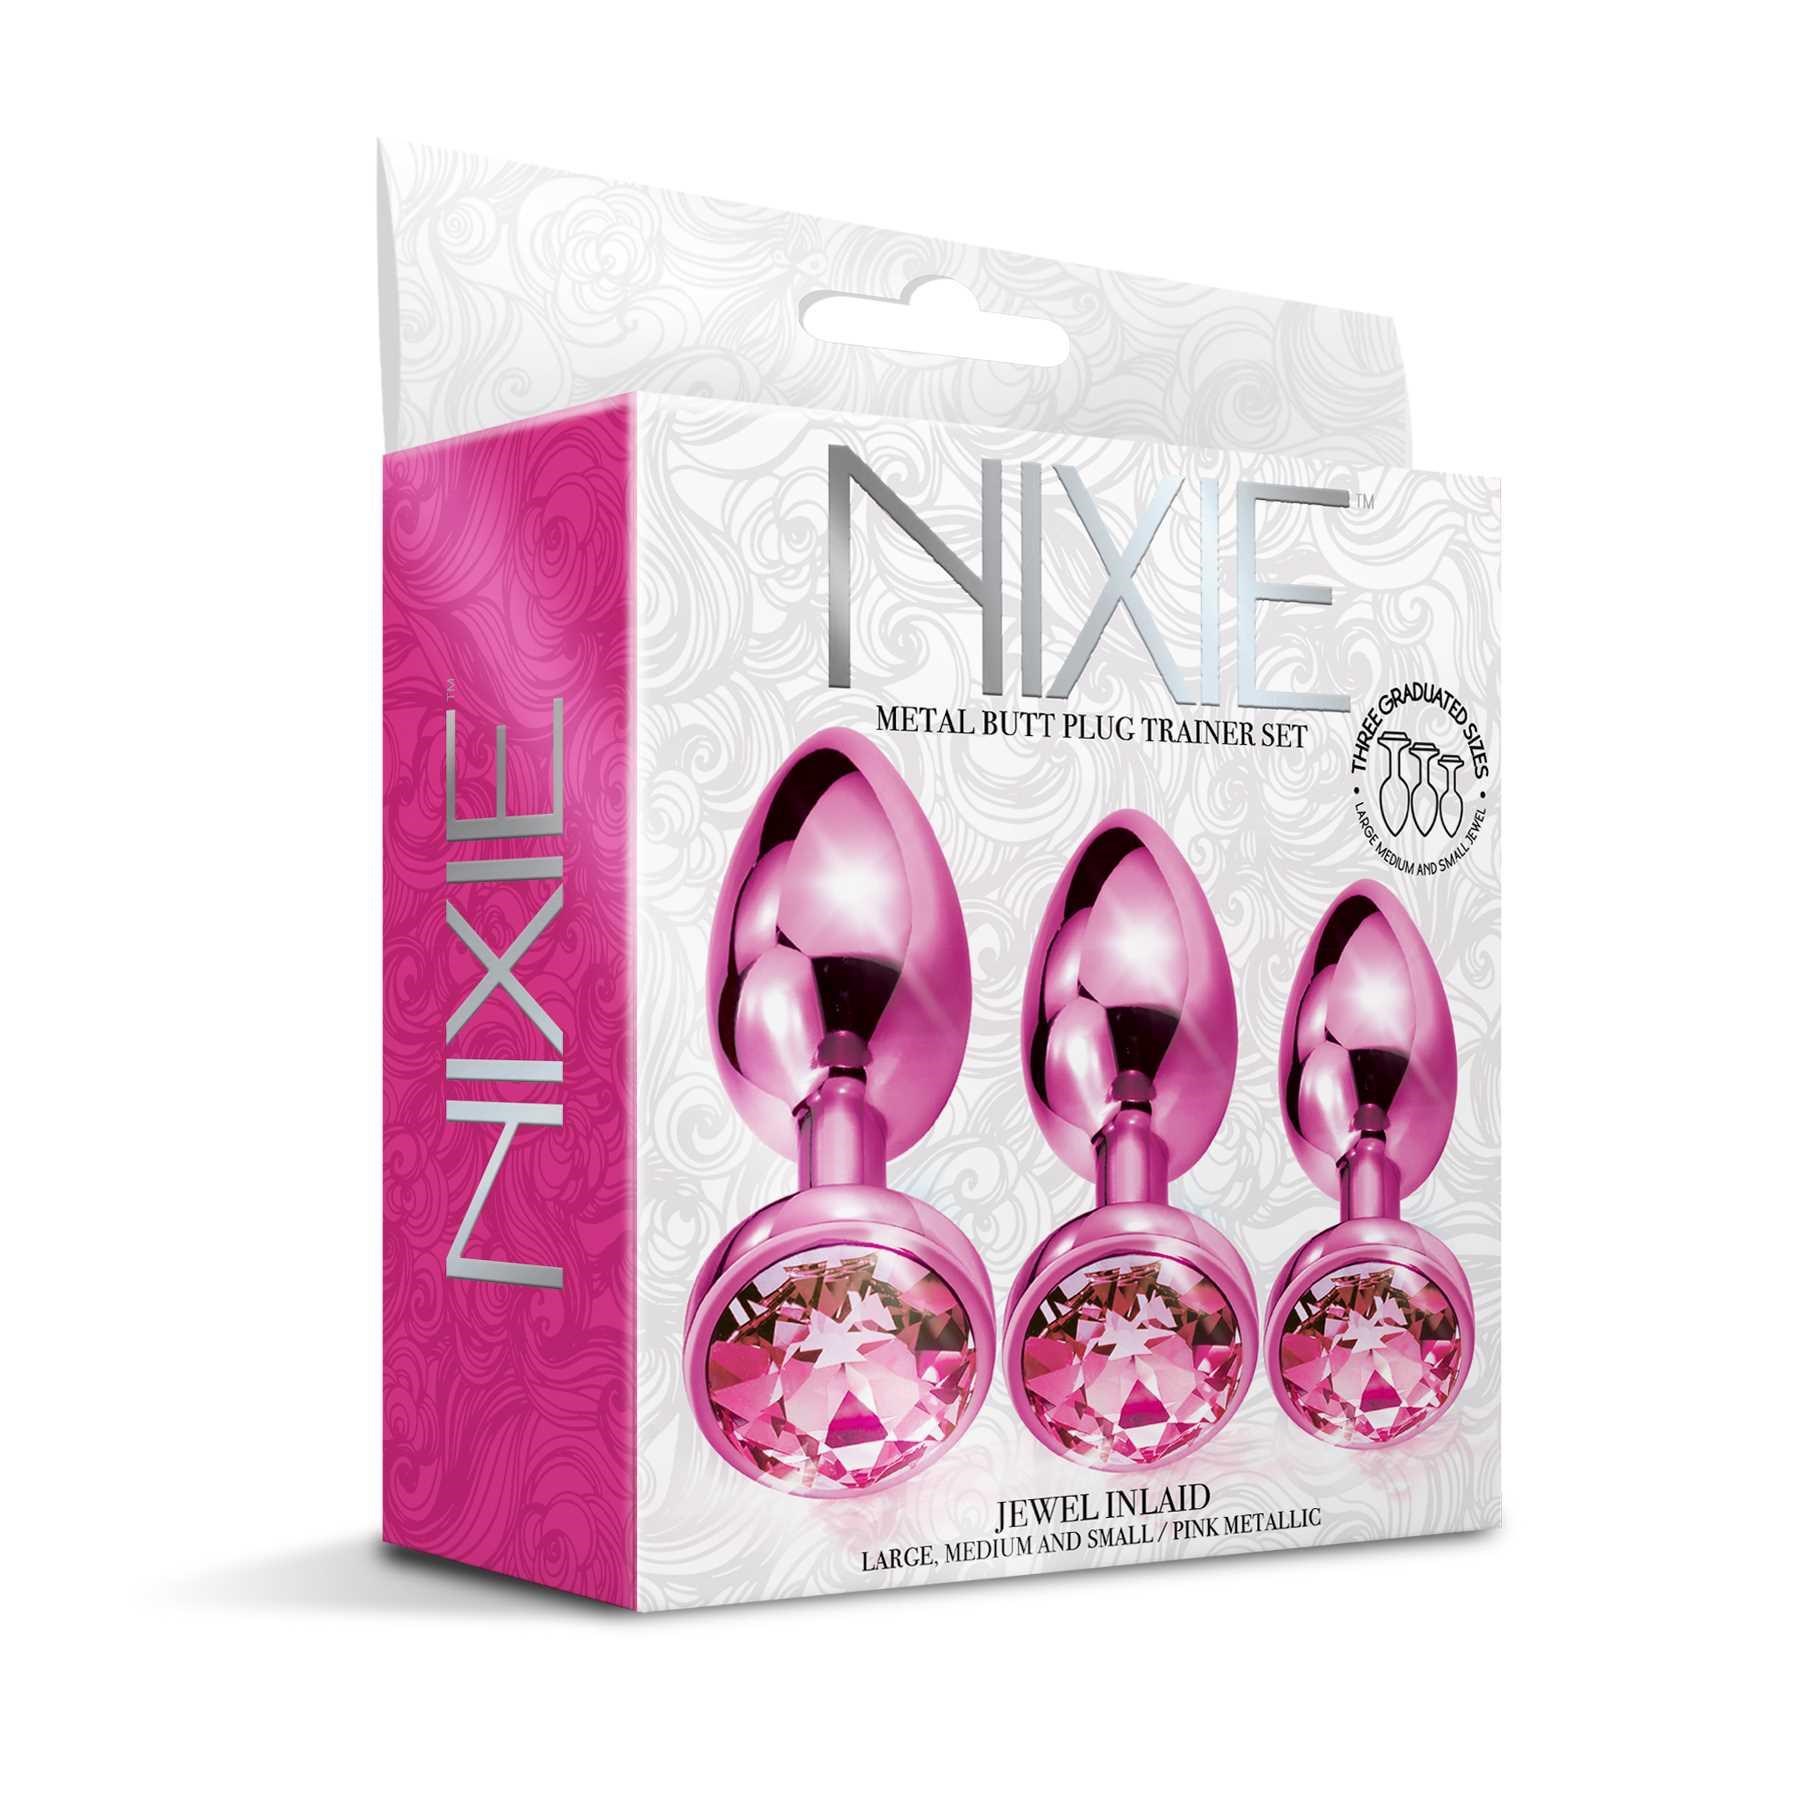 NIXIE Metal Butt Plug Trainer Set Metallic pink box